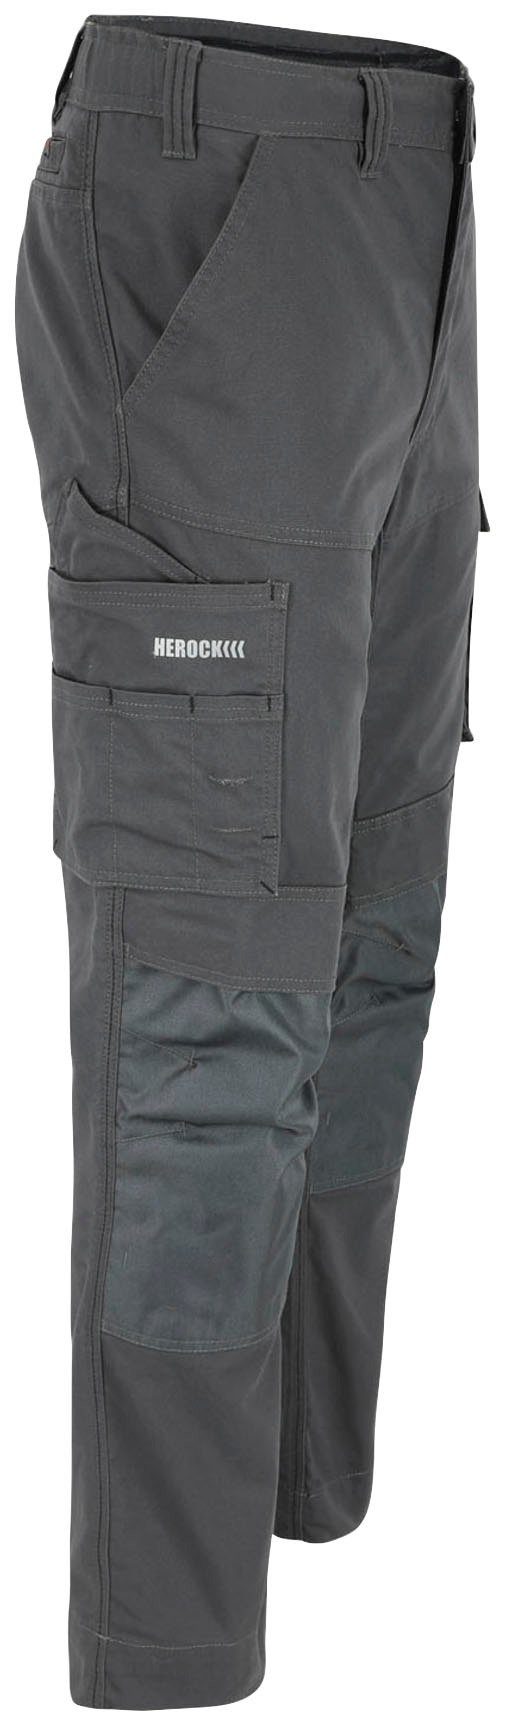 Herock Arbeitshose SOCRES Multi-pocket, wasserabweisend grau beschichtet, 2-Wege-Stretch, bequem